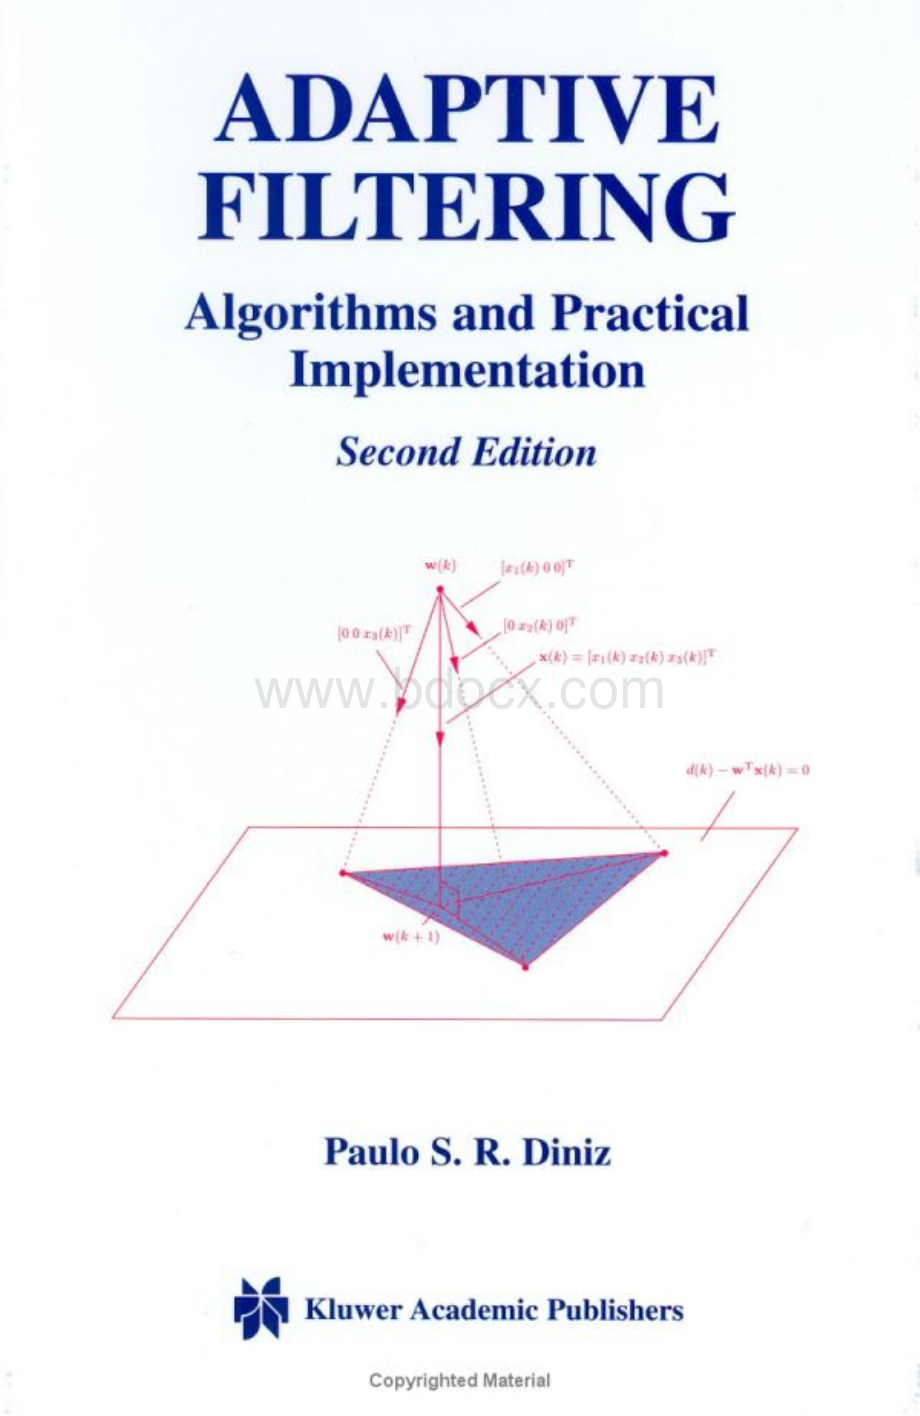 自适应滤波Adaptive Filtering Algorithms and Practical Implementation.pdf